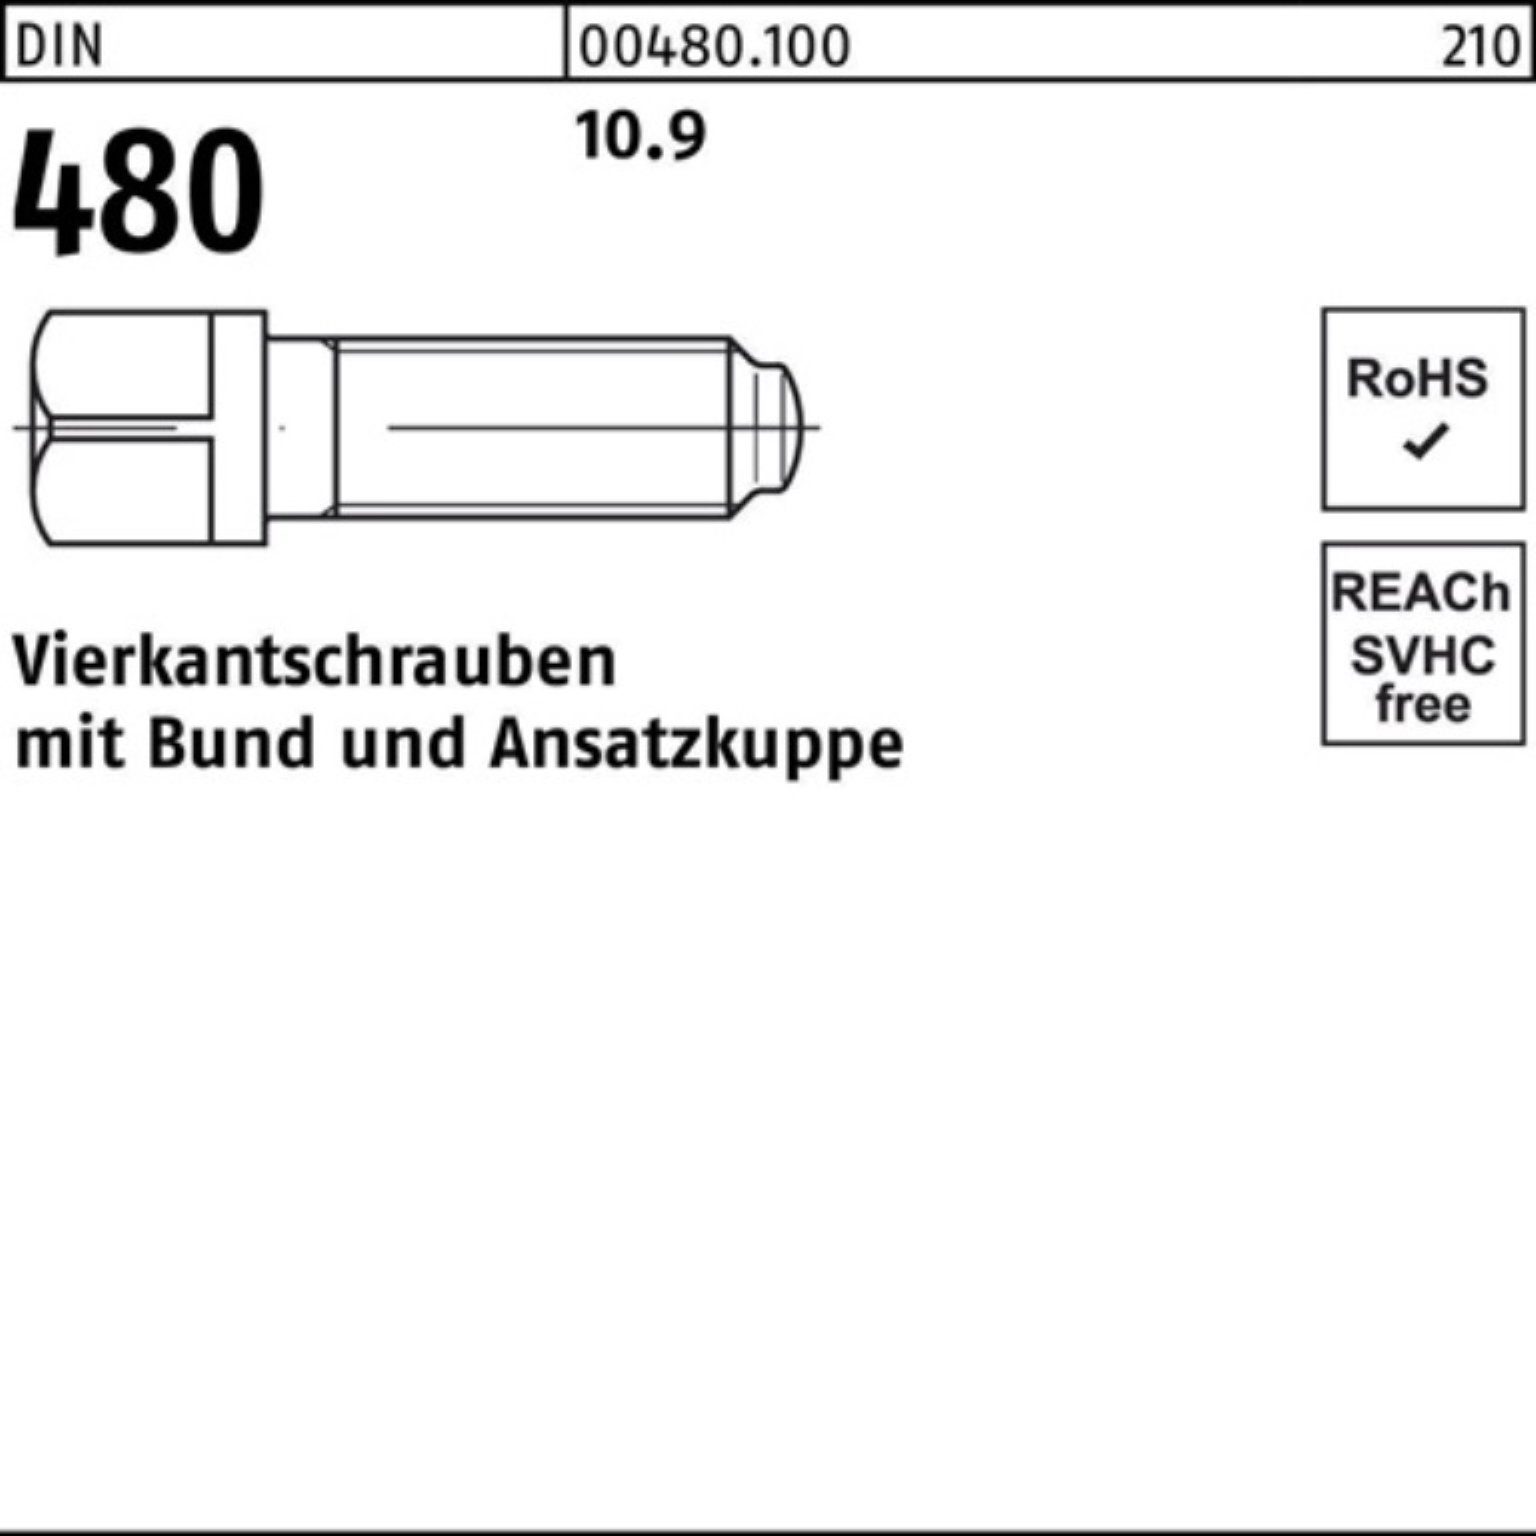 60 Vierkantschraube 480 50 M10x DIN Pack S 100er Reyher Schraube 10.9 Bund/Ansatzkuppe